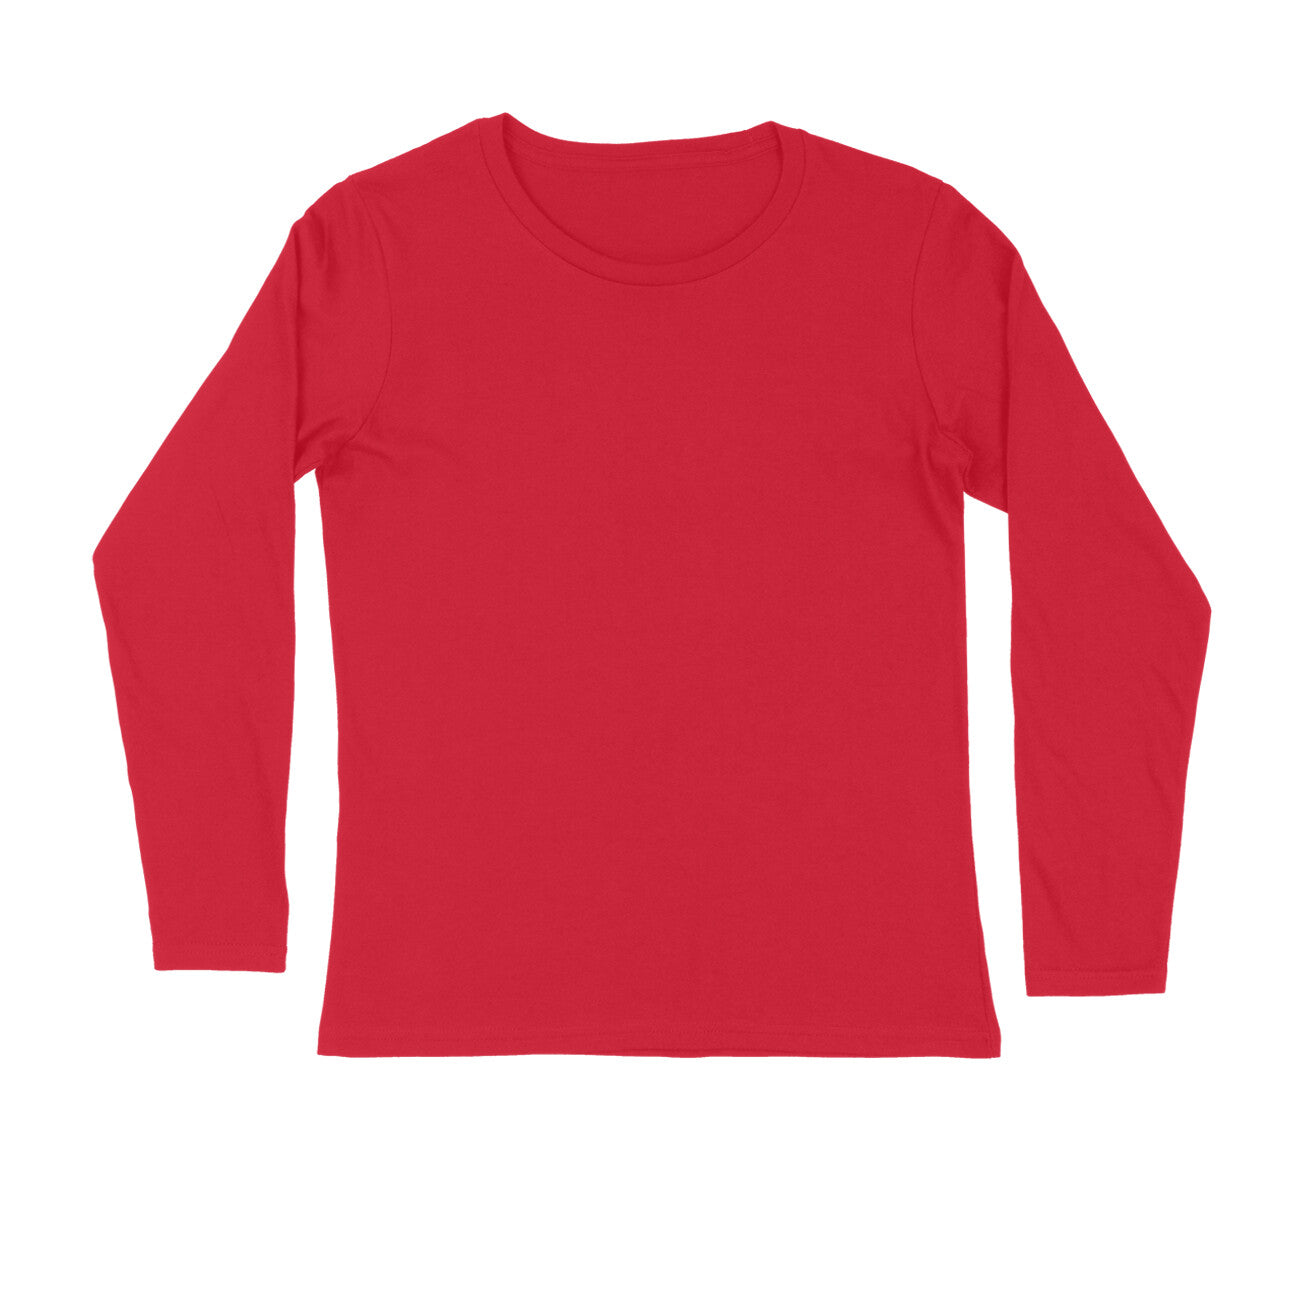 Men's Red Full Sleeve T-shirt